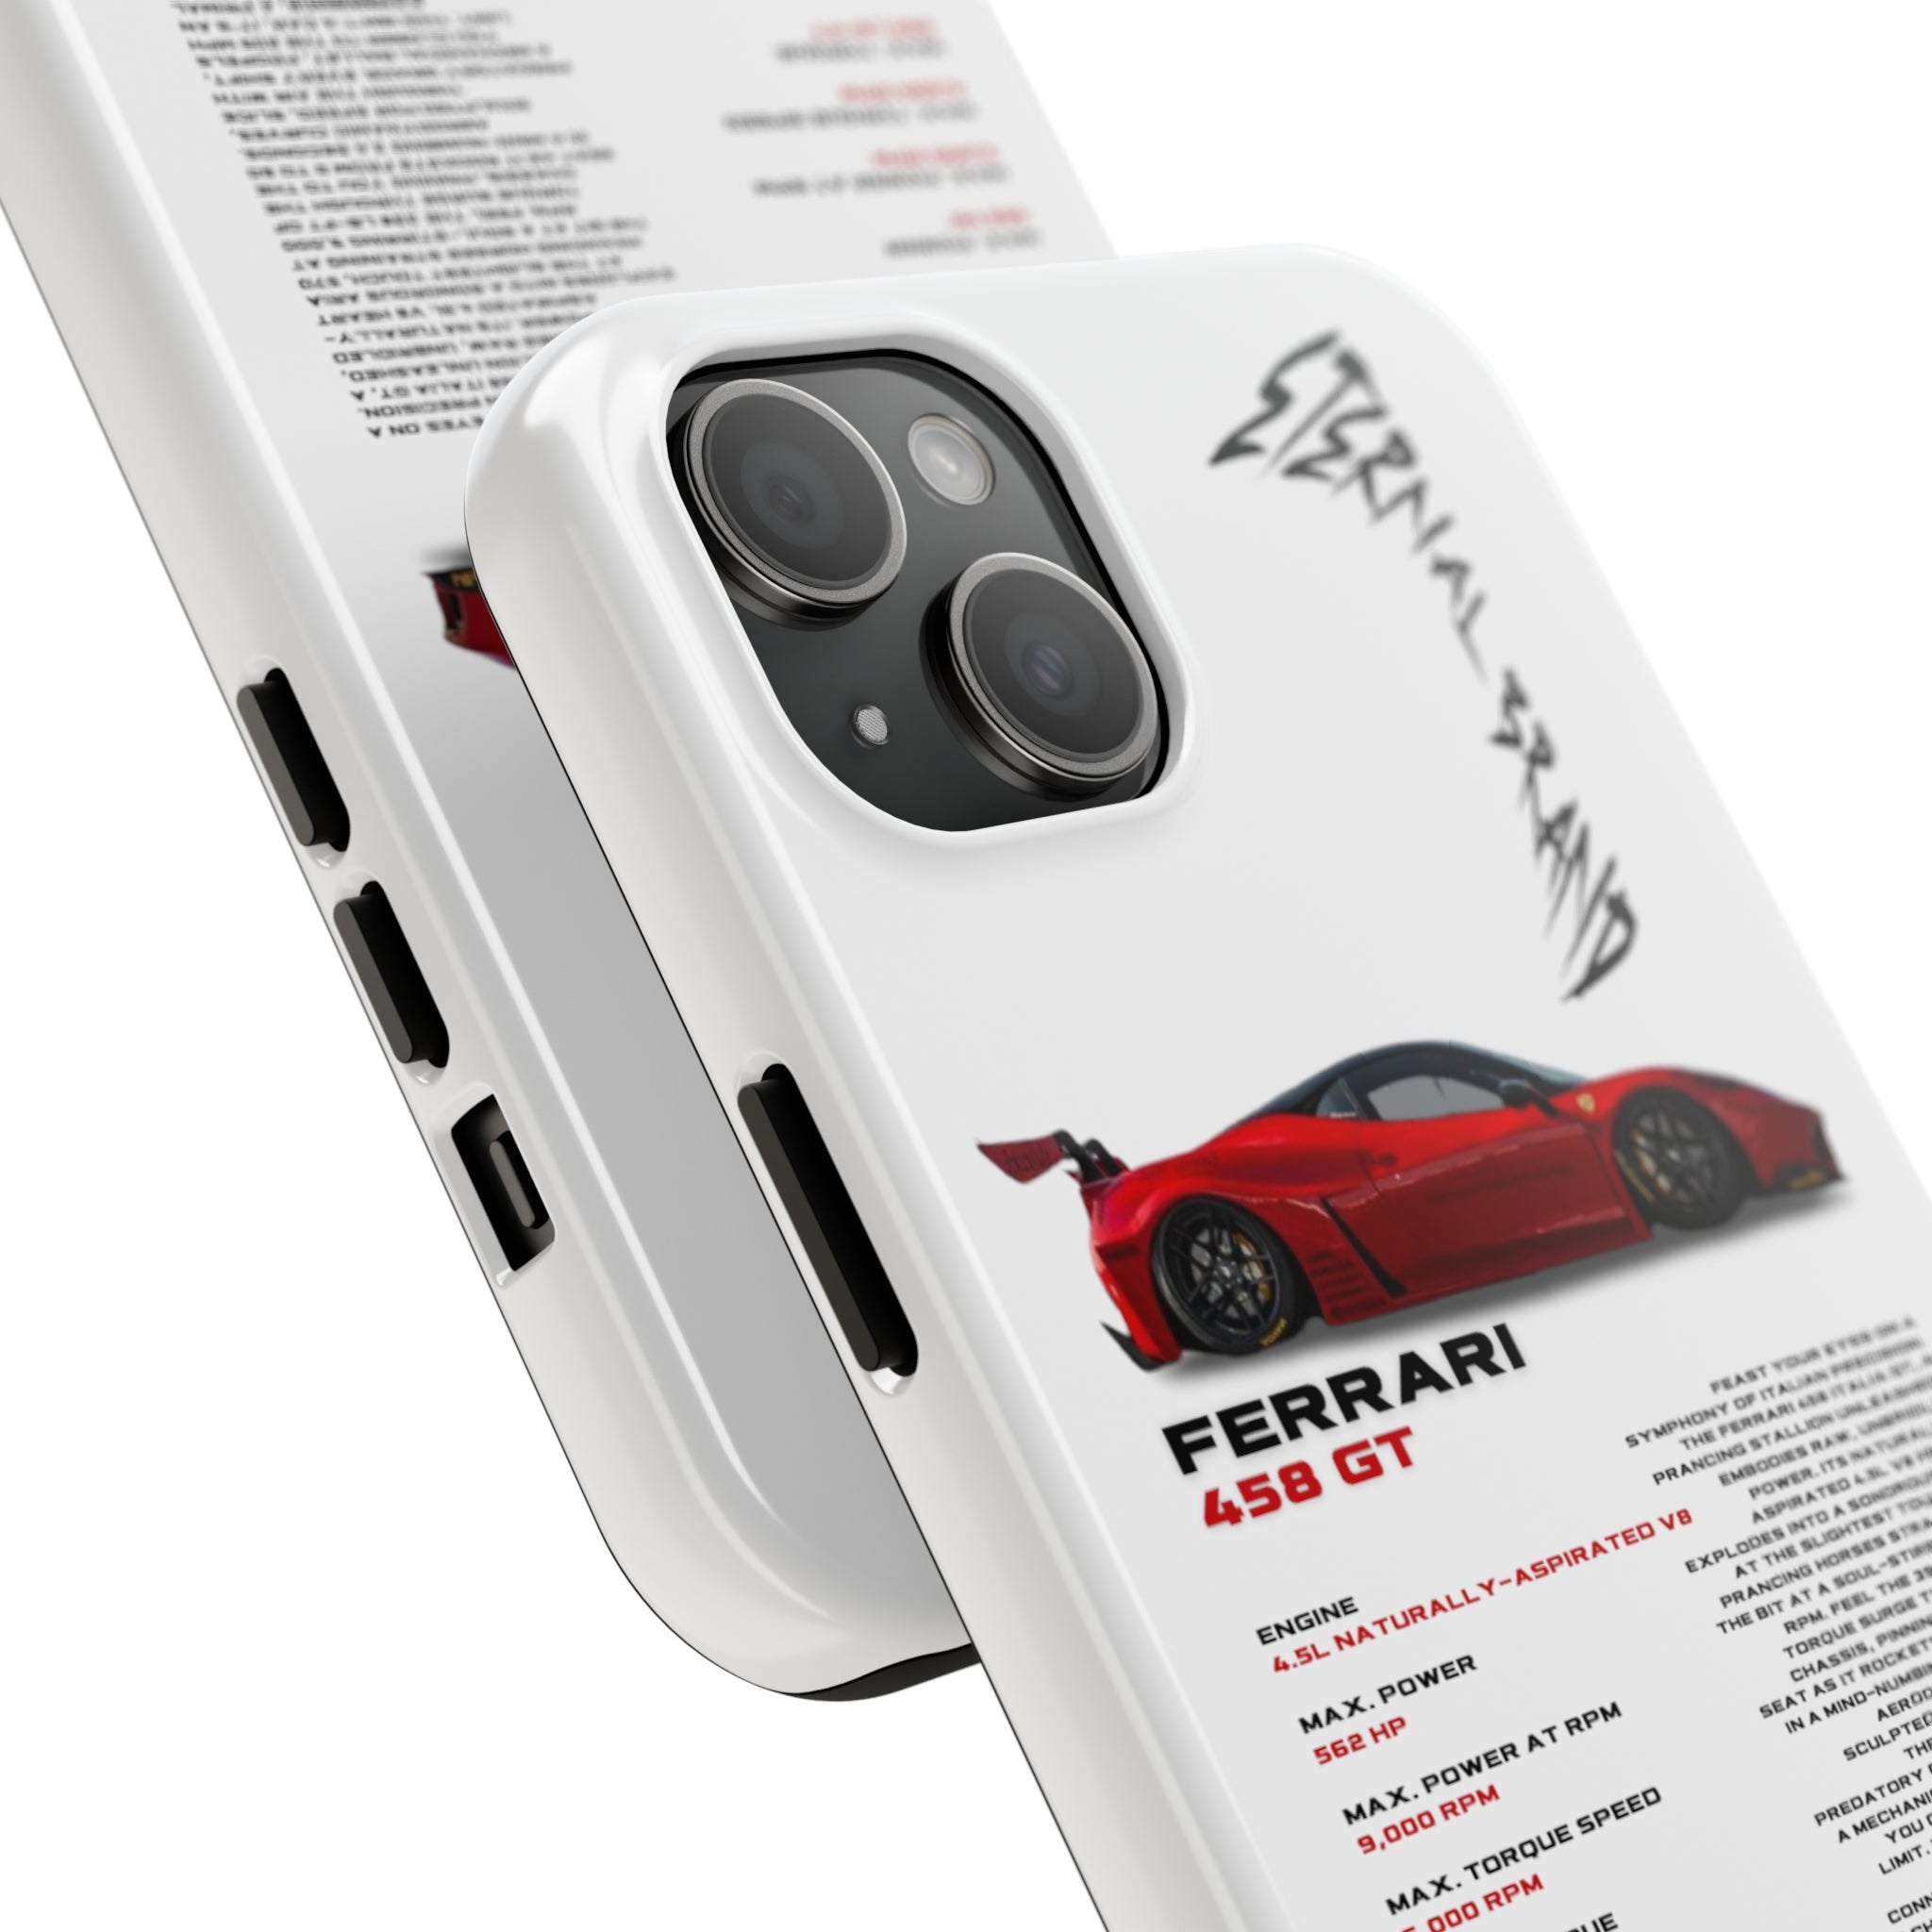 Ferrari 458 GT "Red"